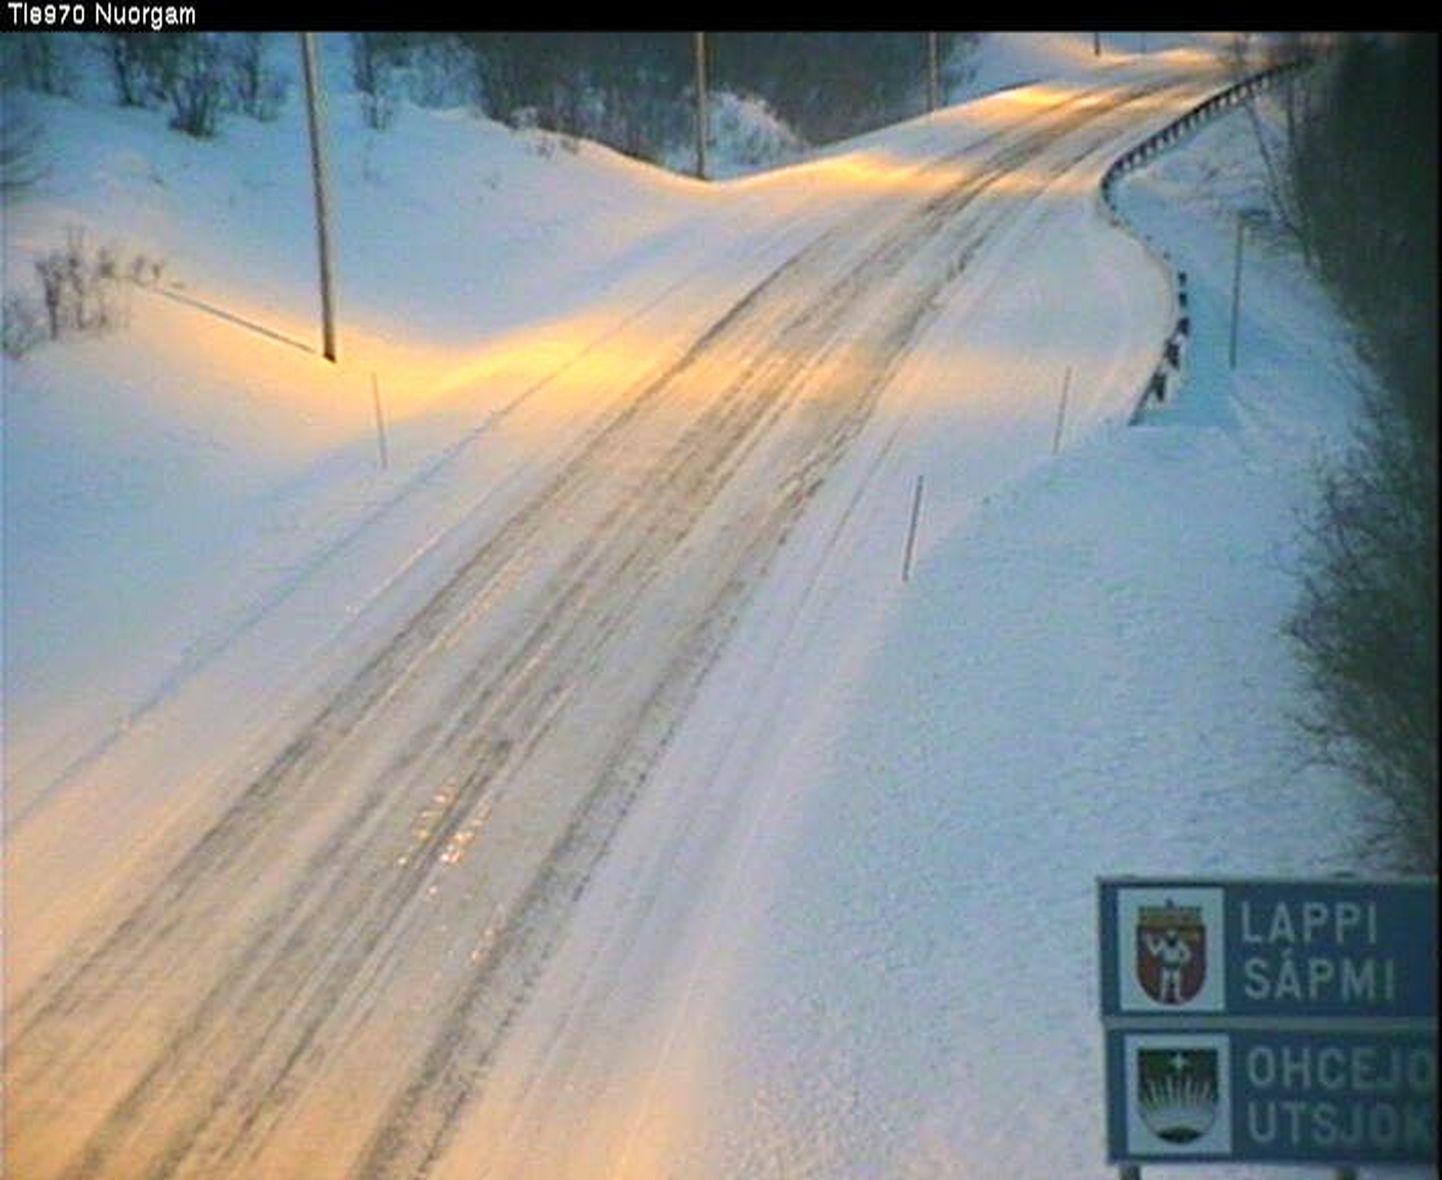 Utsjoele suunduv maantee Põhja-Soomes. Maanteekaamerast saadud pilt on tehtud kell 9.49, mil õhutemperatuur oli -7,5 kraadi.